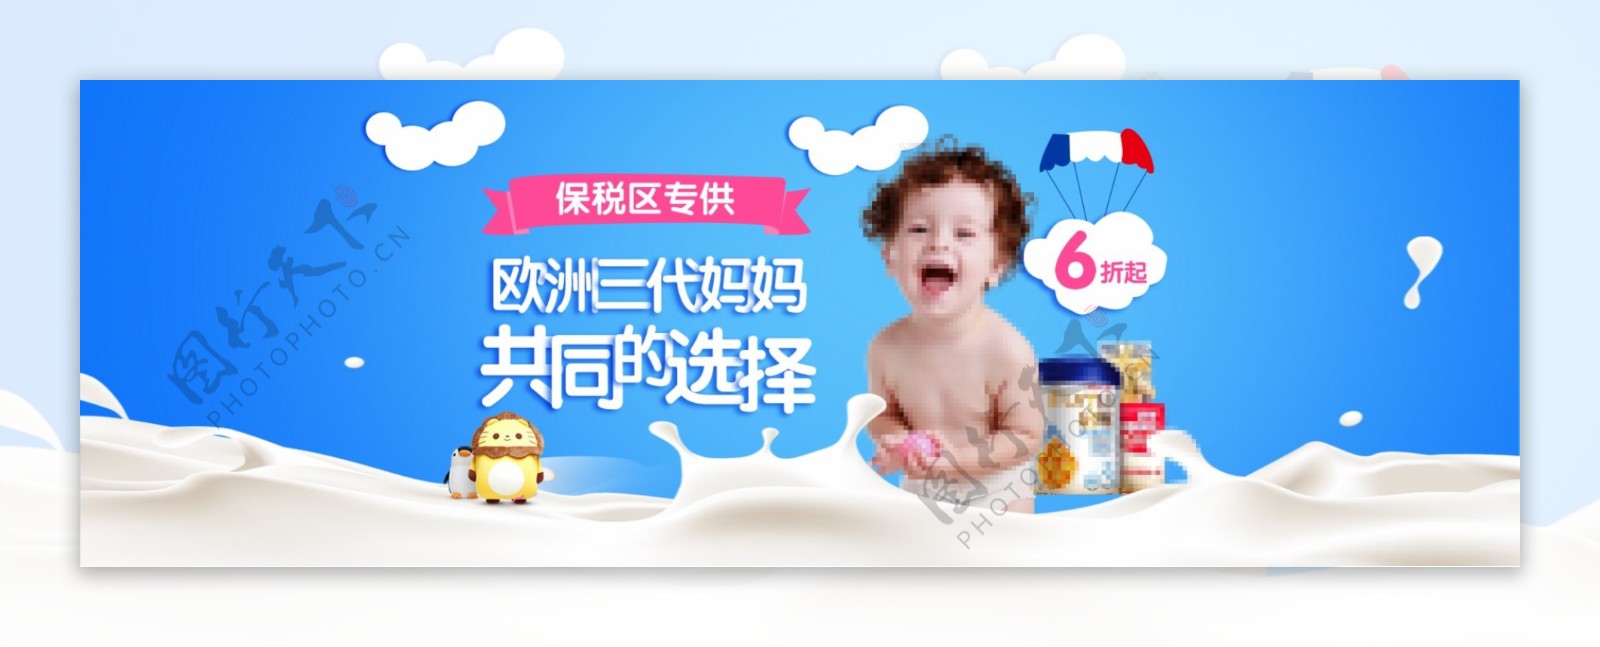 甜美风格母婴用品全屏海报模板